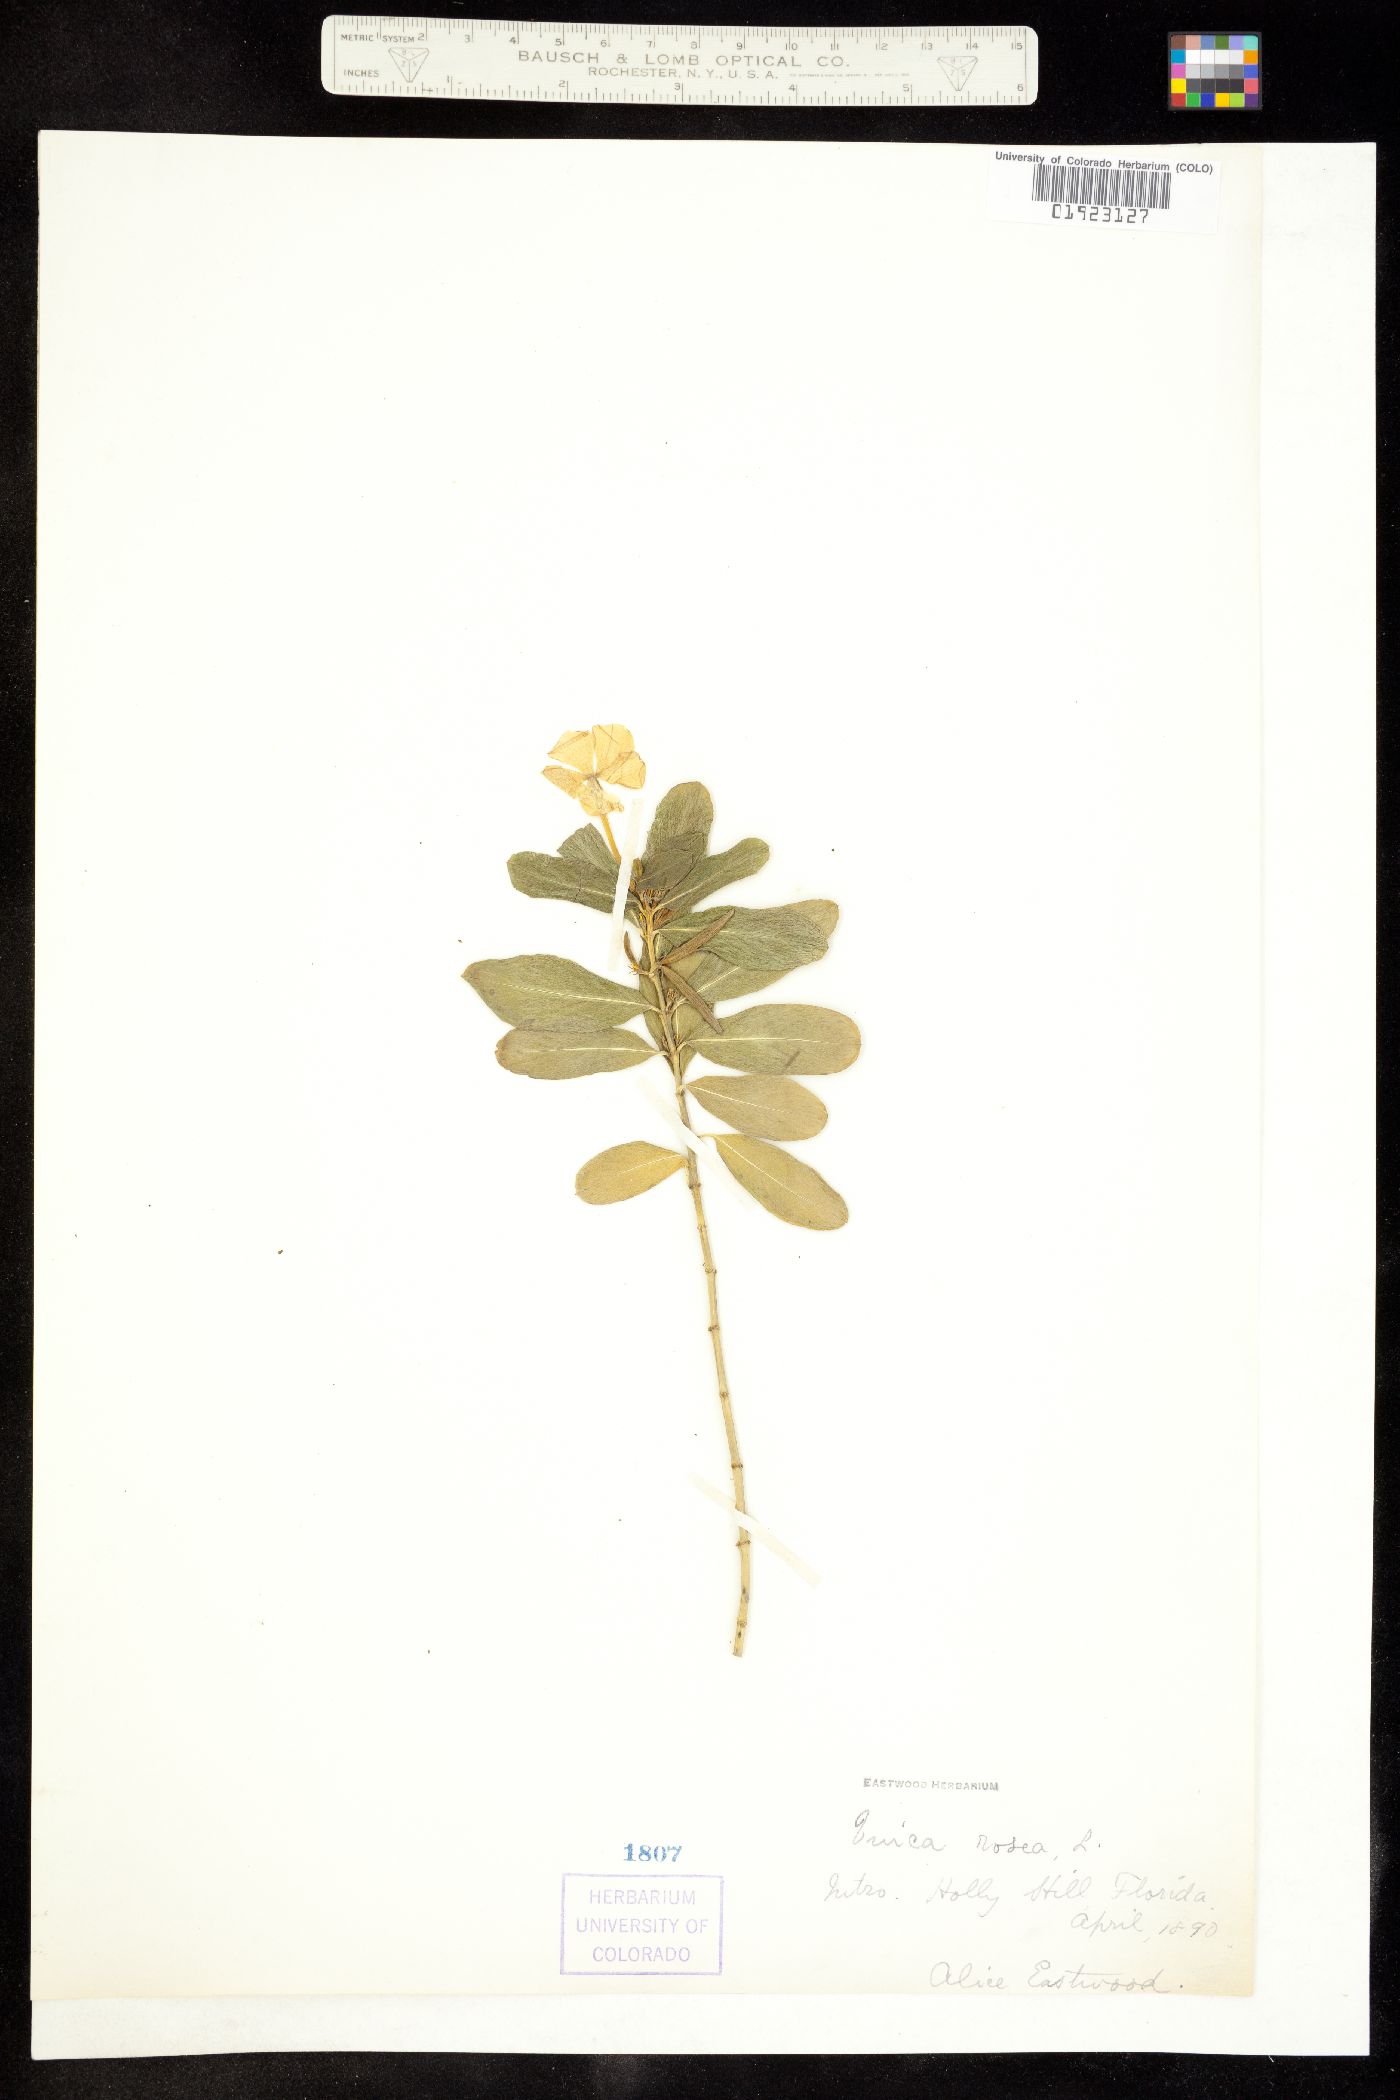 Catharanthus image